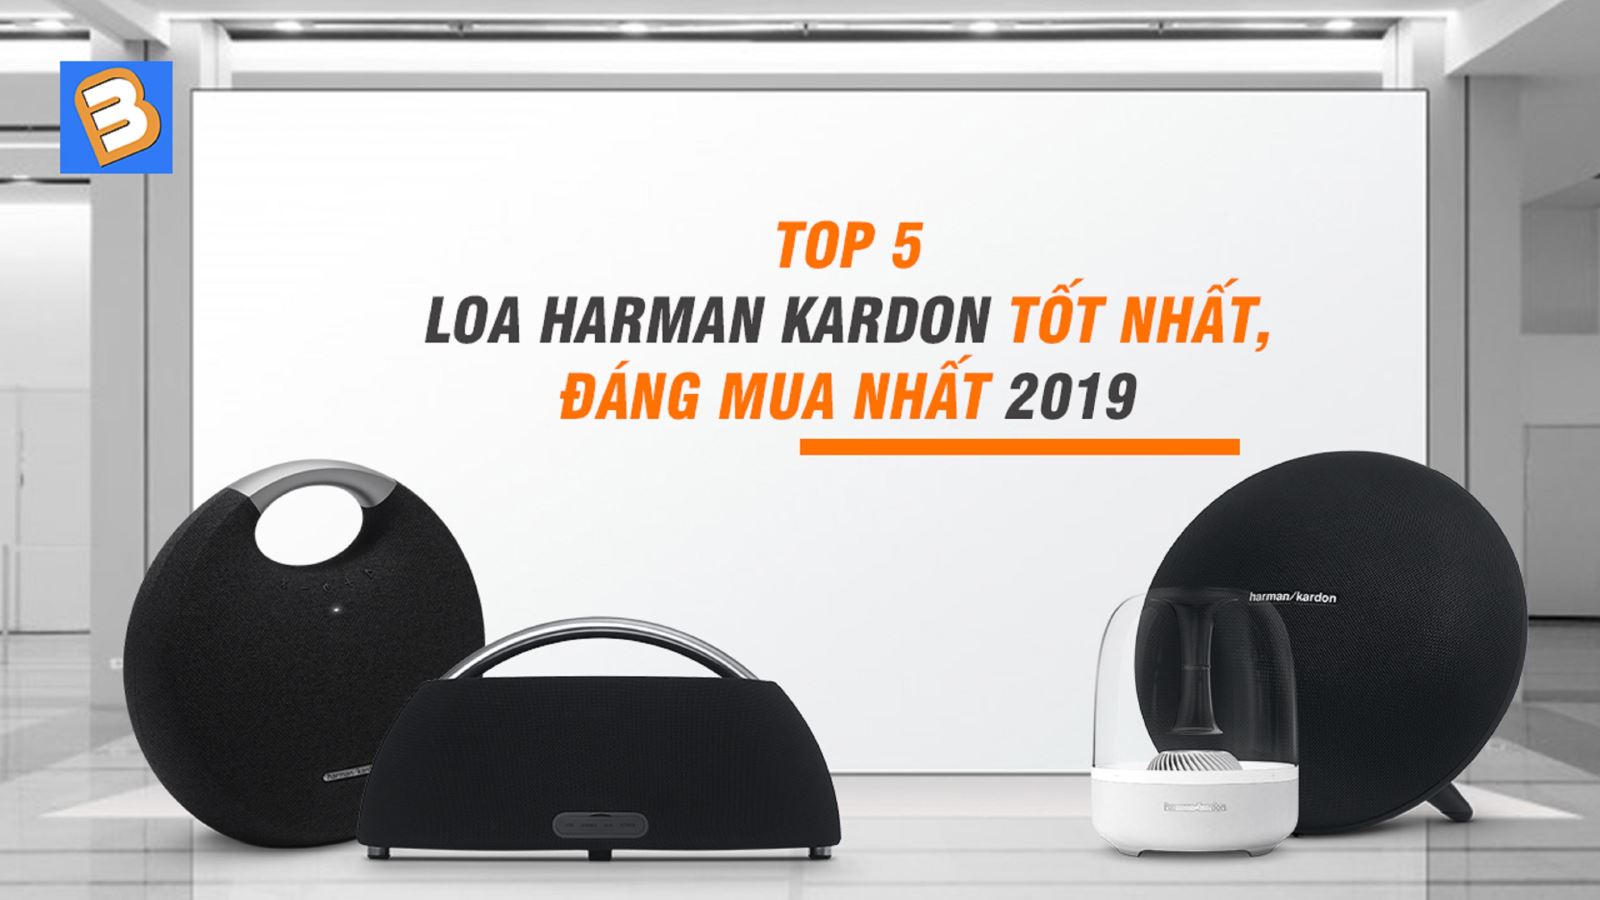 Top 5 loa Harman Kardon tốt nhất, đáng mua nhất 2019